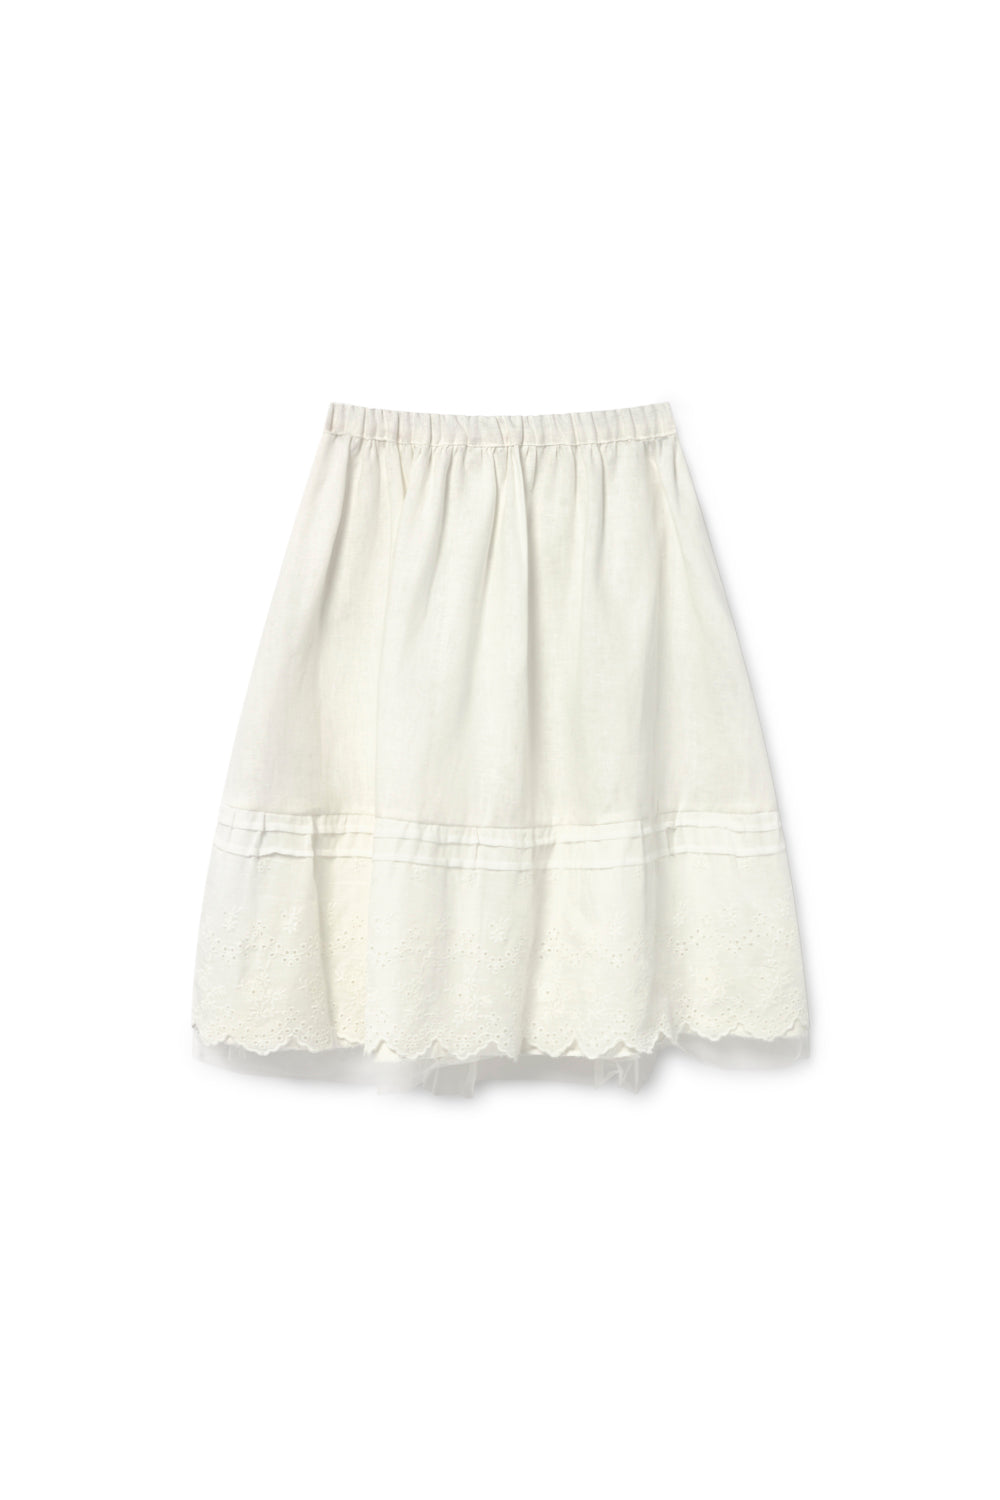 Villanelle LCF Skirt